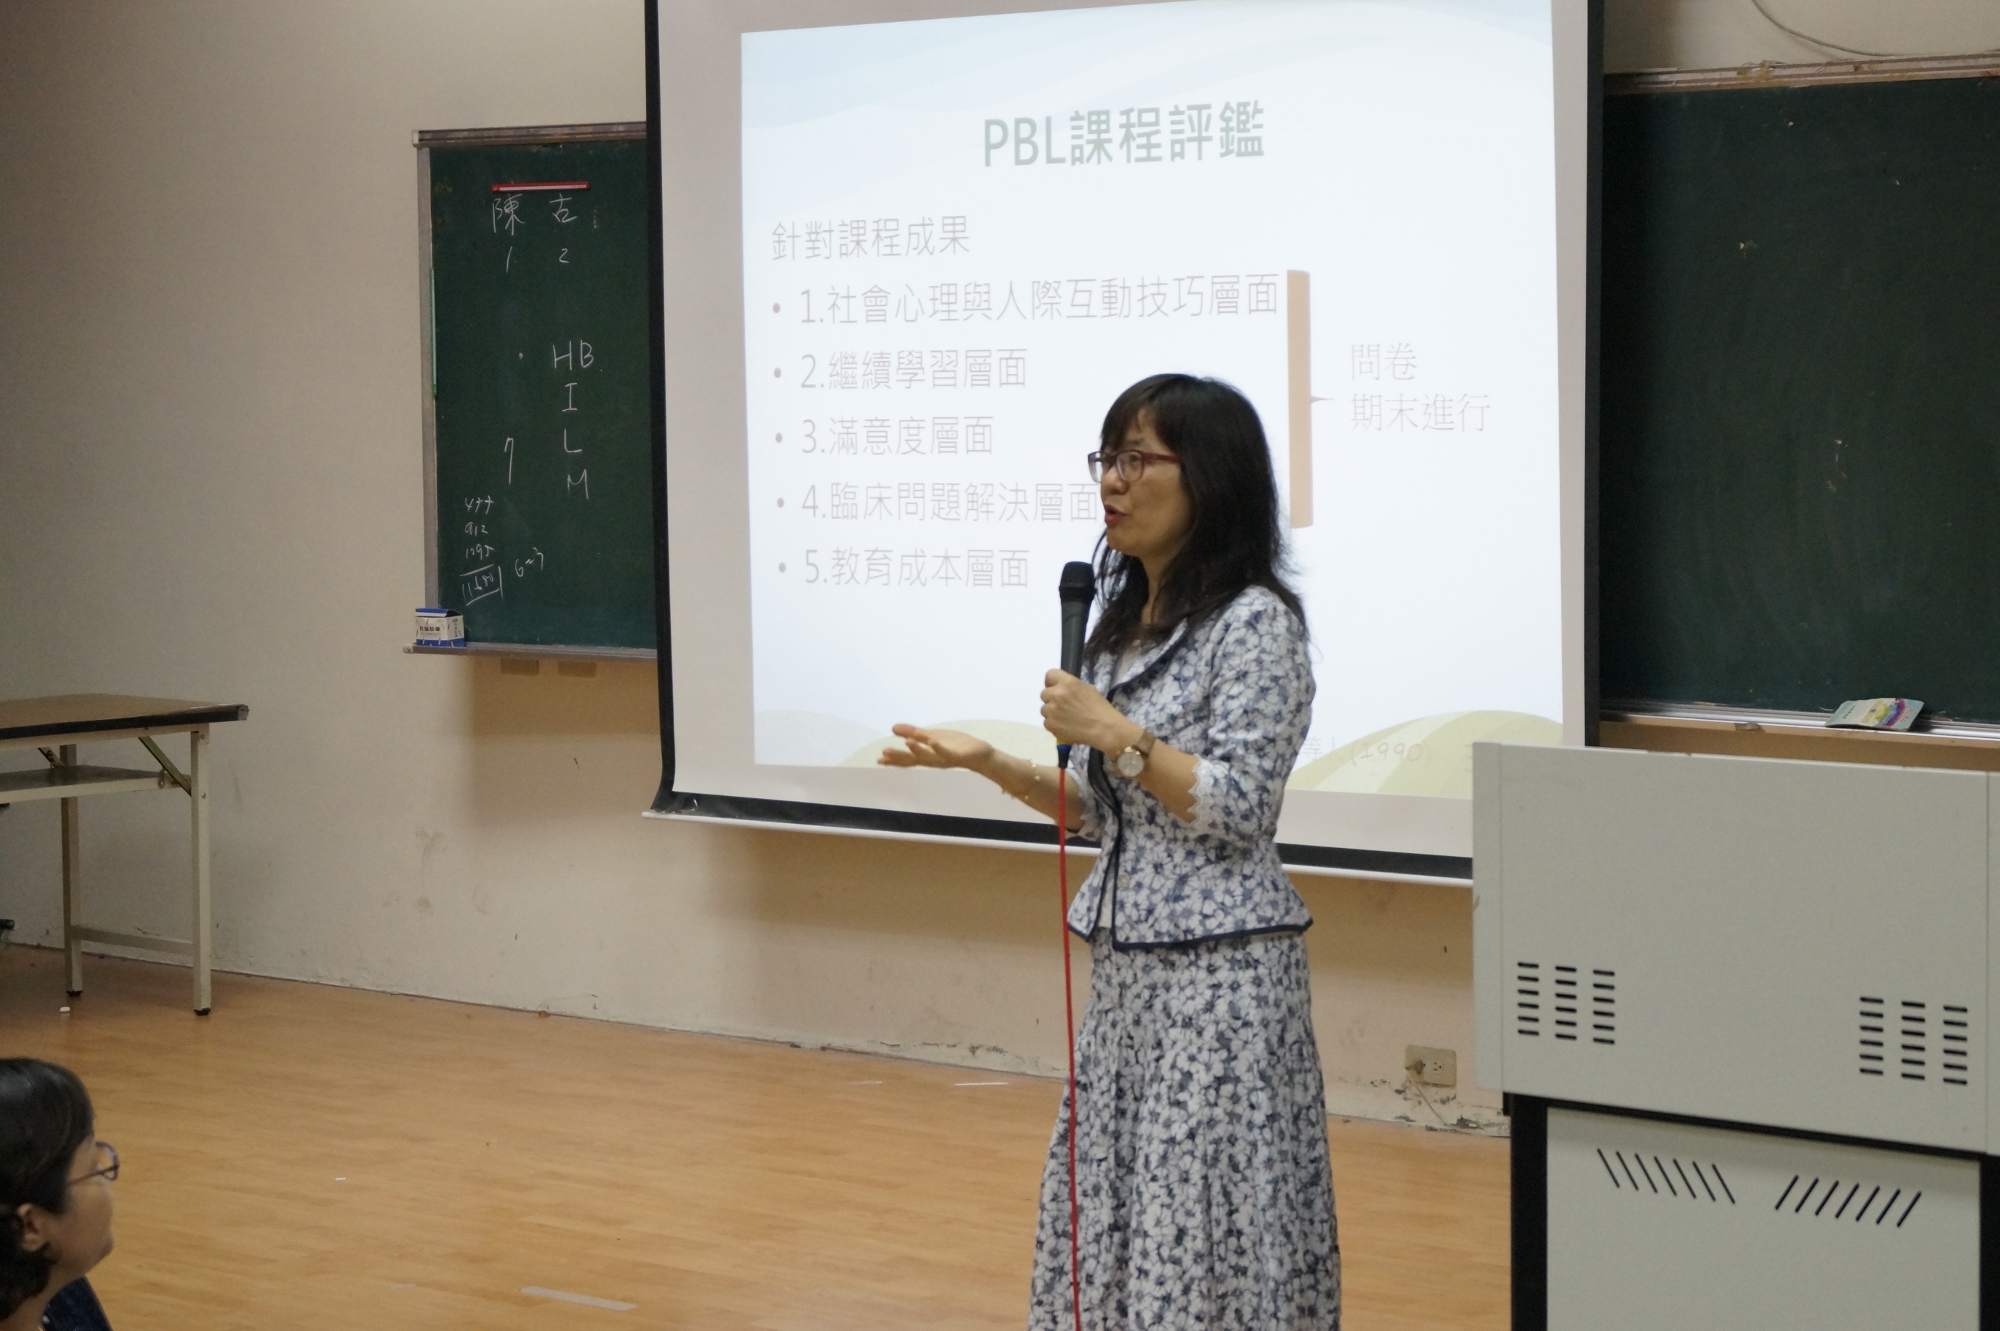 中醫大醫學檢驗生物技術學系教授林孟亮分享如何扮演tutor角色及進行PBL課程會遇到的問題。